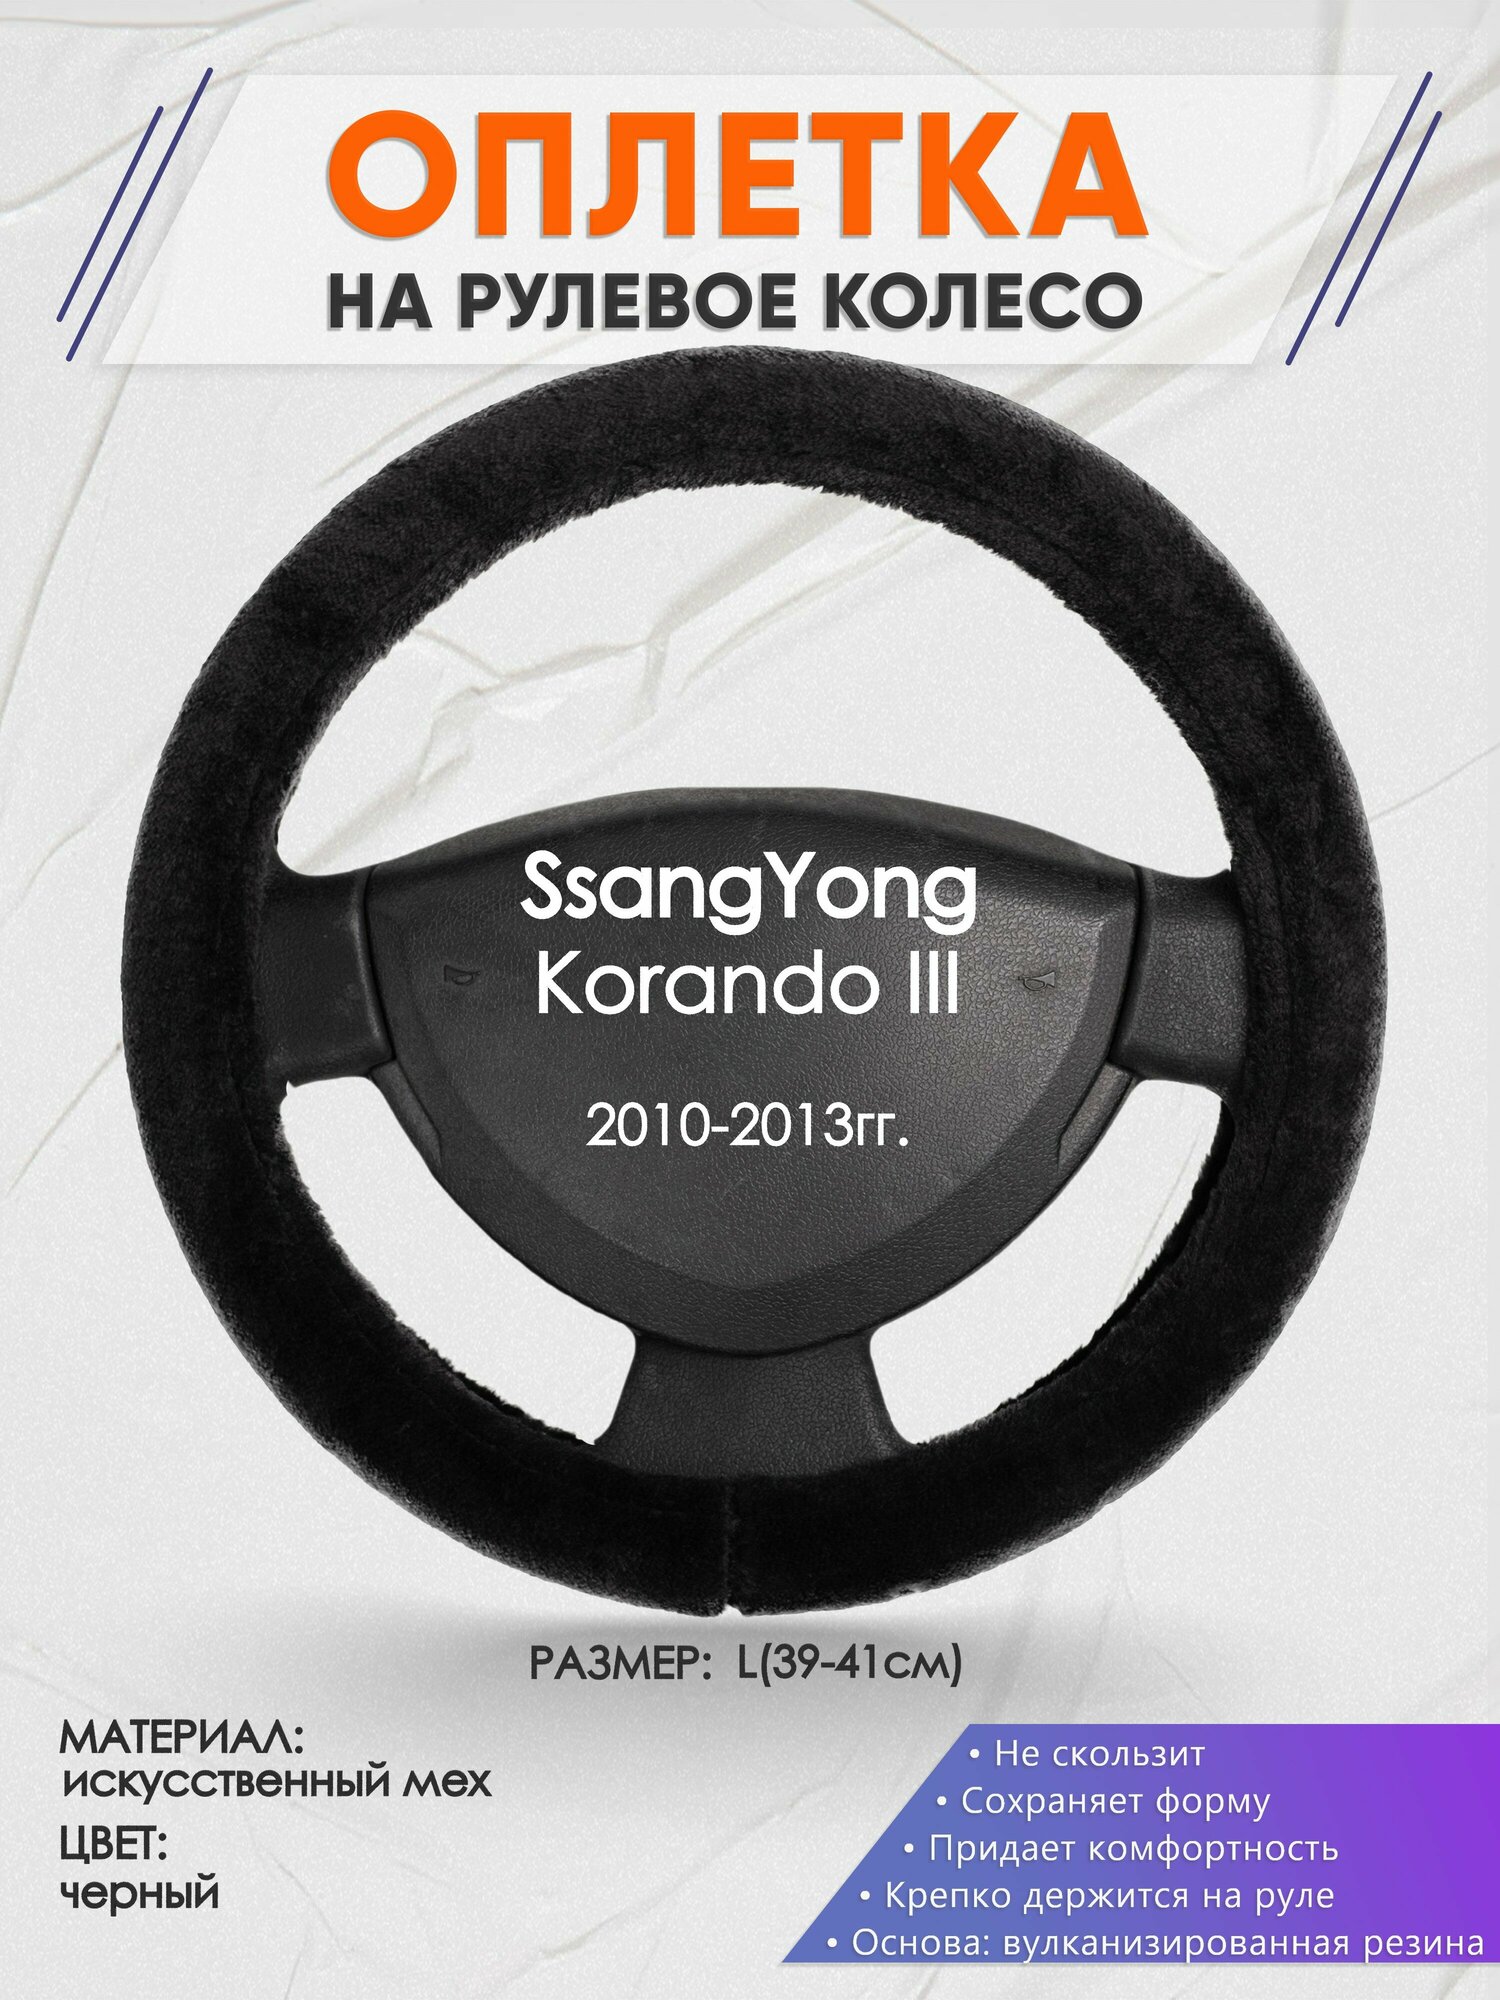 Оплетка на руль для SsangYong Korando 3(Санг Енг корандо) 2010-2013, L(39-41см), Искусственный мех 45